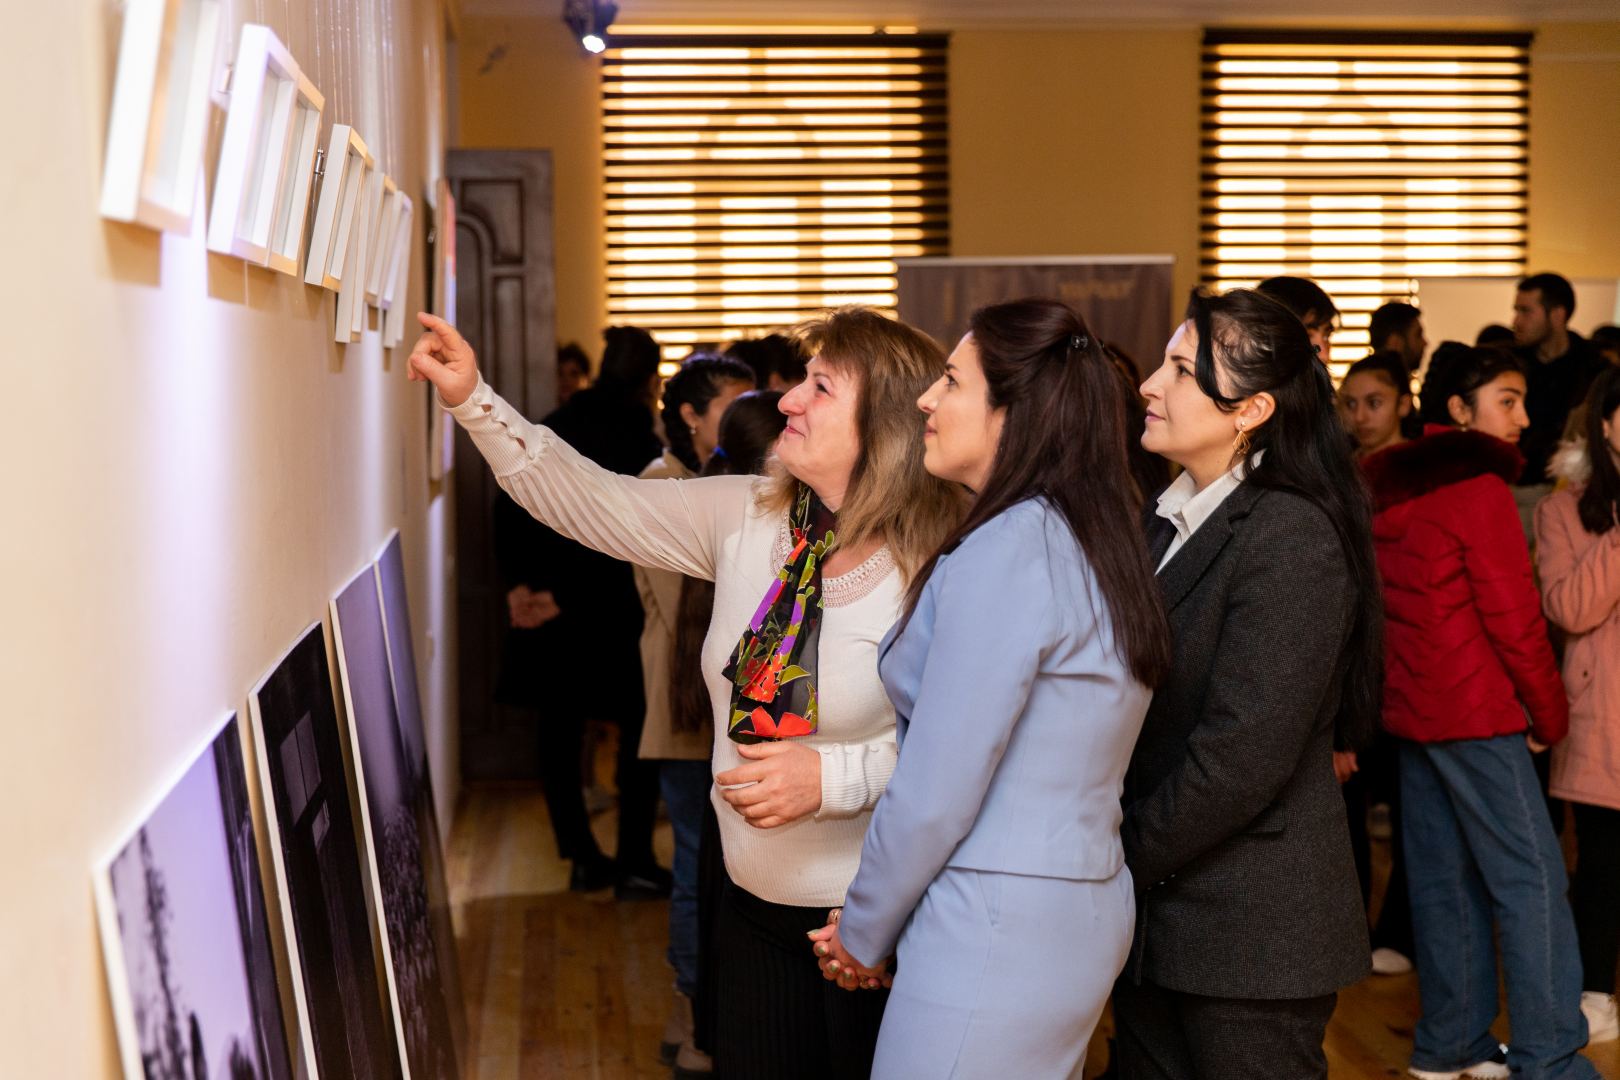 YARAT представил в Саатлы выставку художников "Тонкие наблюдения" (ФОТО)